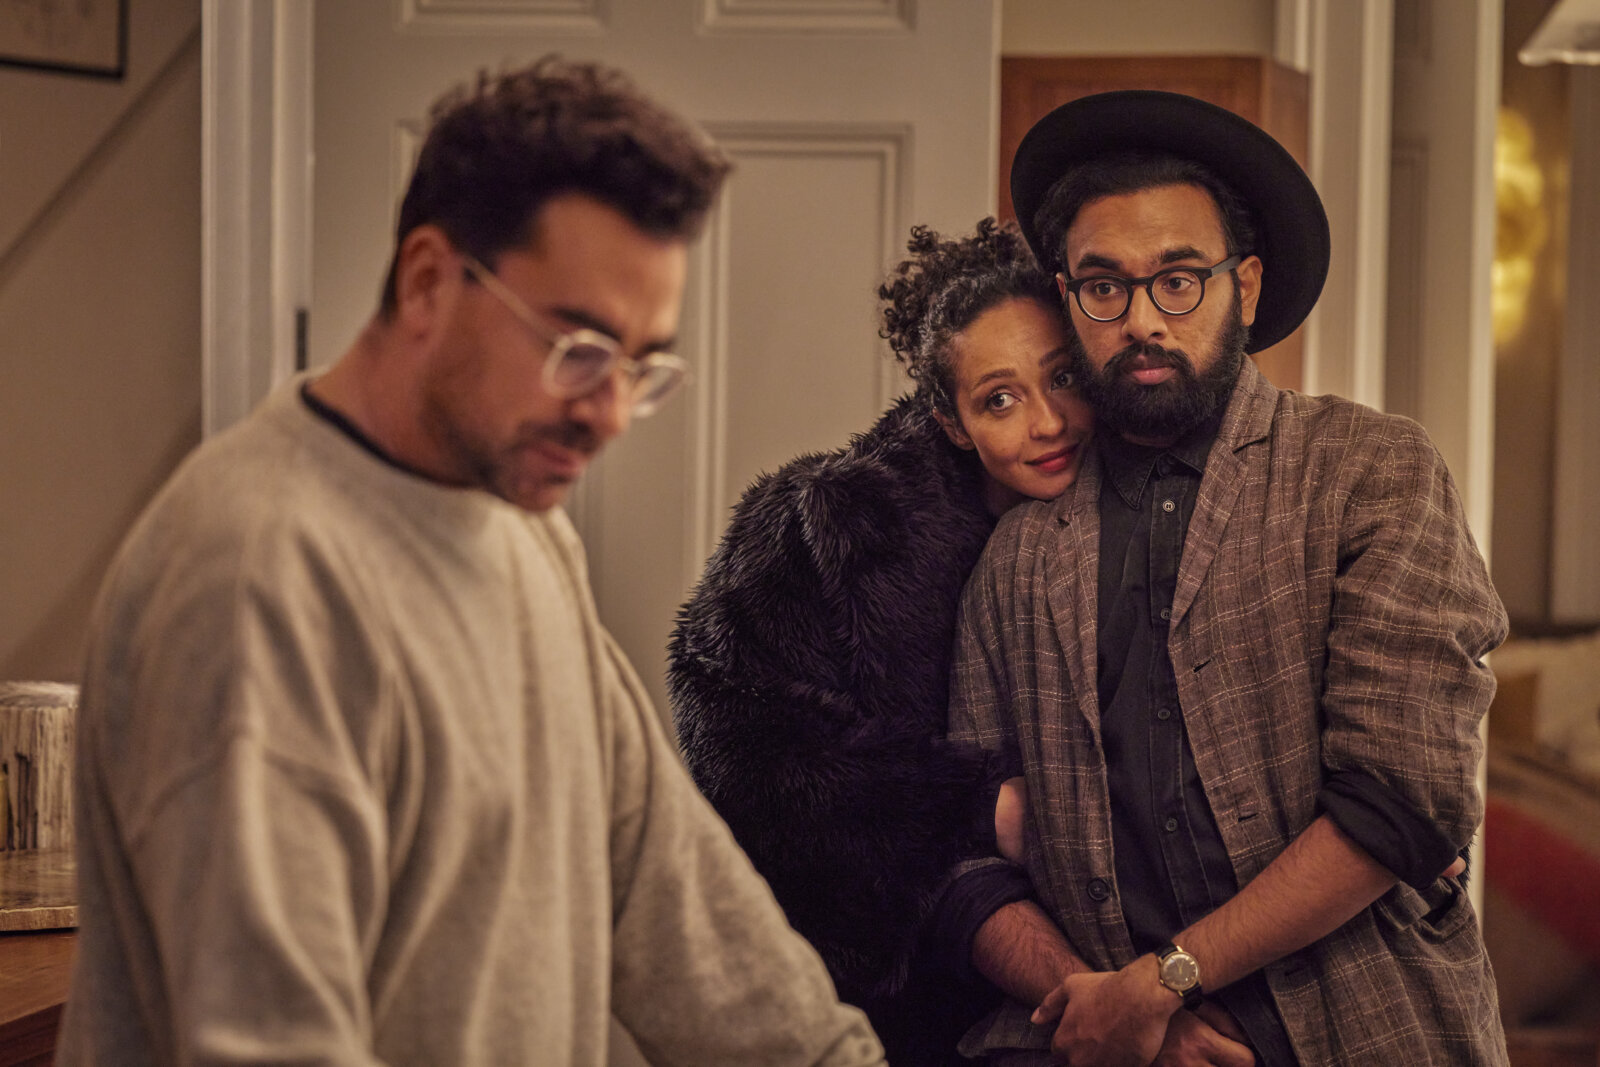 Eine Szene aus dem neuen netflix-Film Good Grief: Marcs Freund*innen Sophie (Ruth Negga) und Thomas (Himesh Patel) versuchen ihm zu helfen.